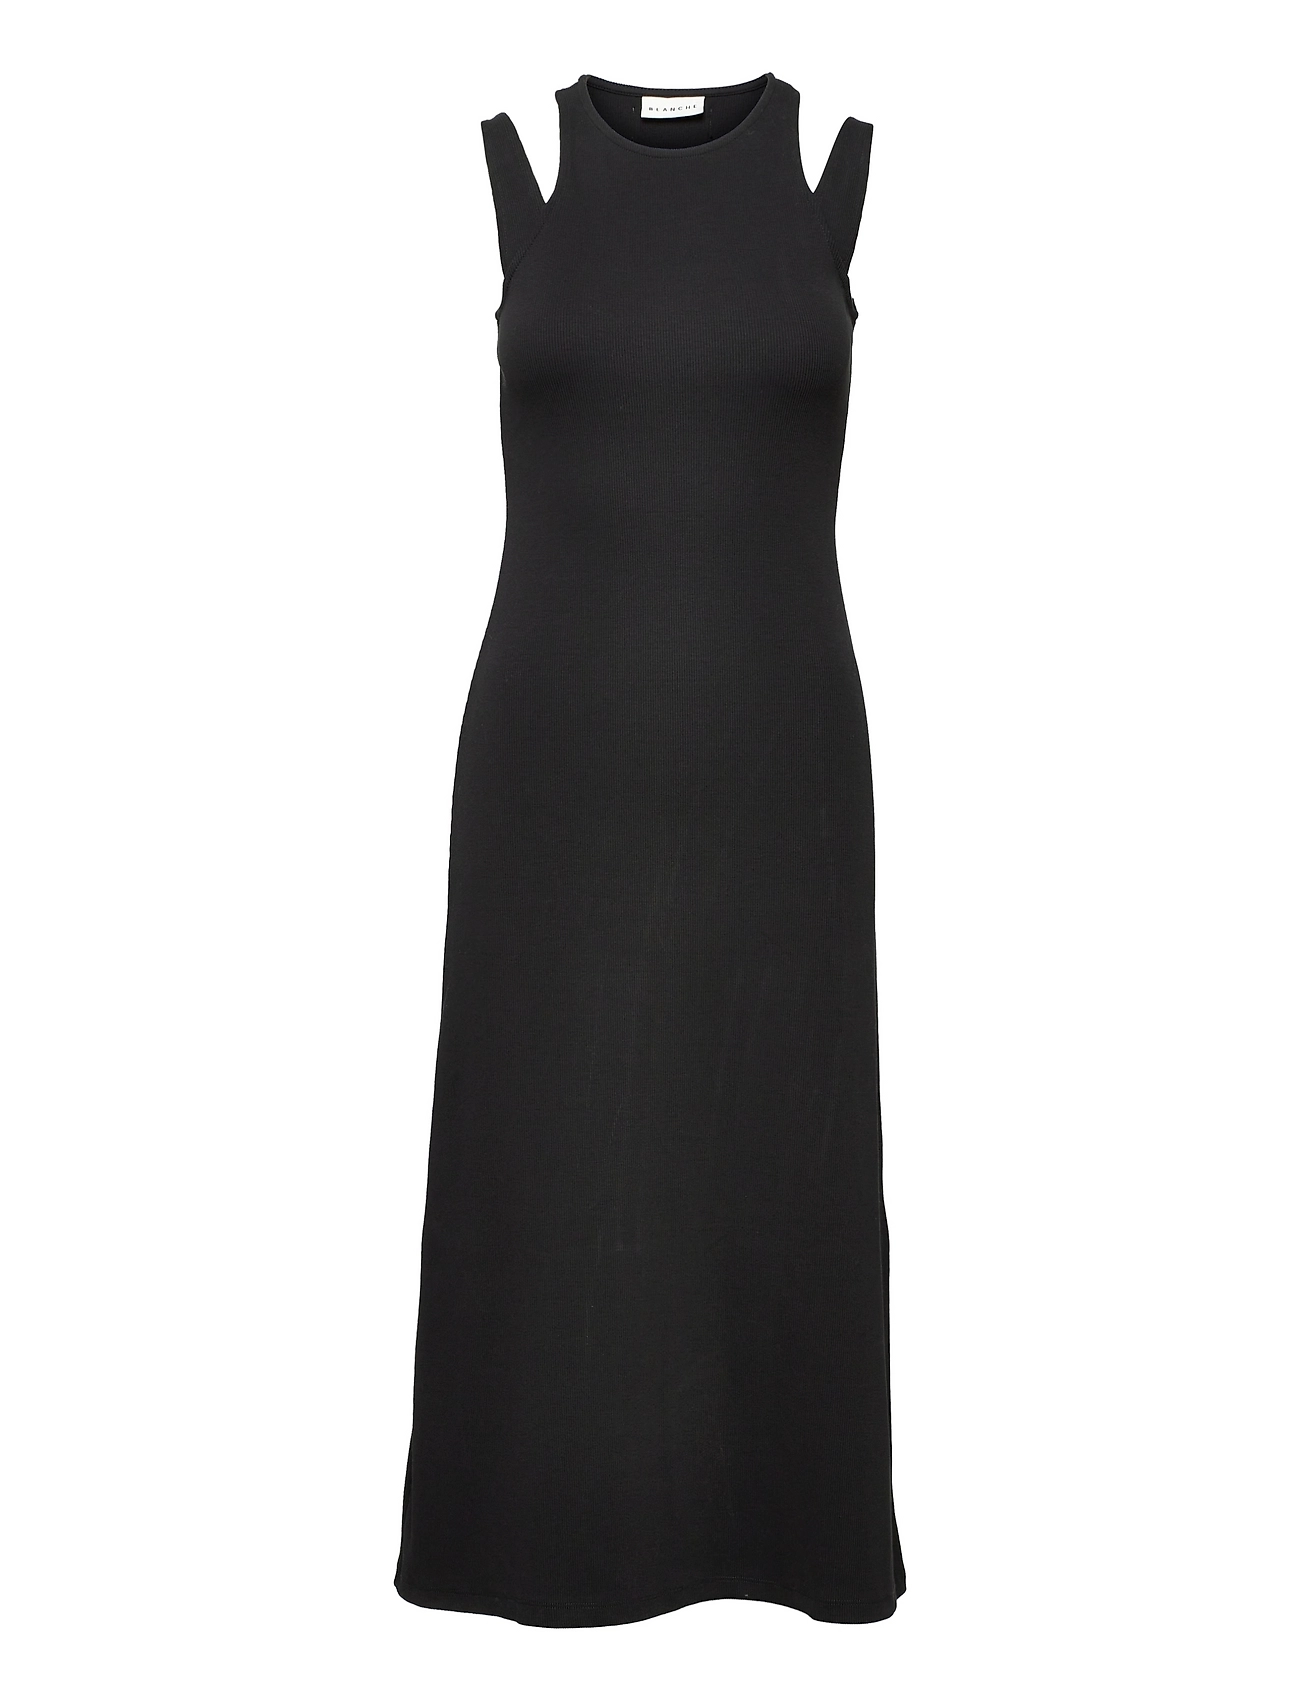 Blanche Rib New Dress - Midi dresses - Boozt.com